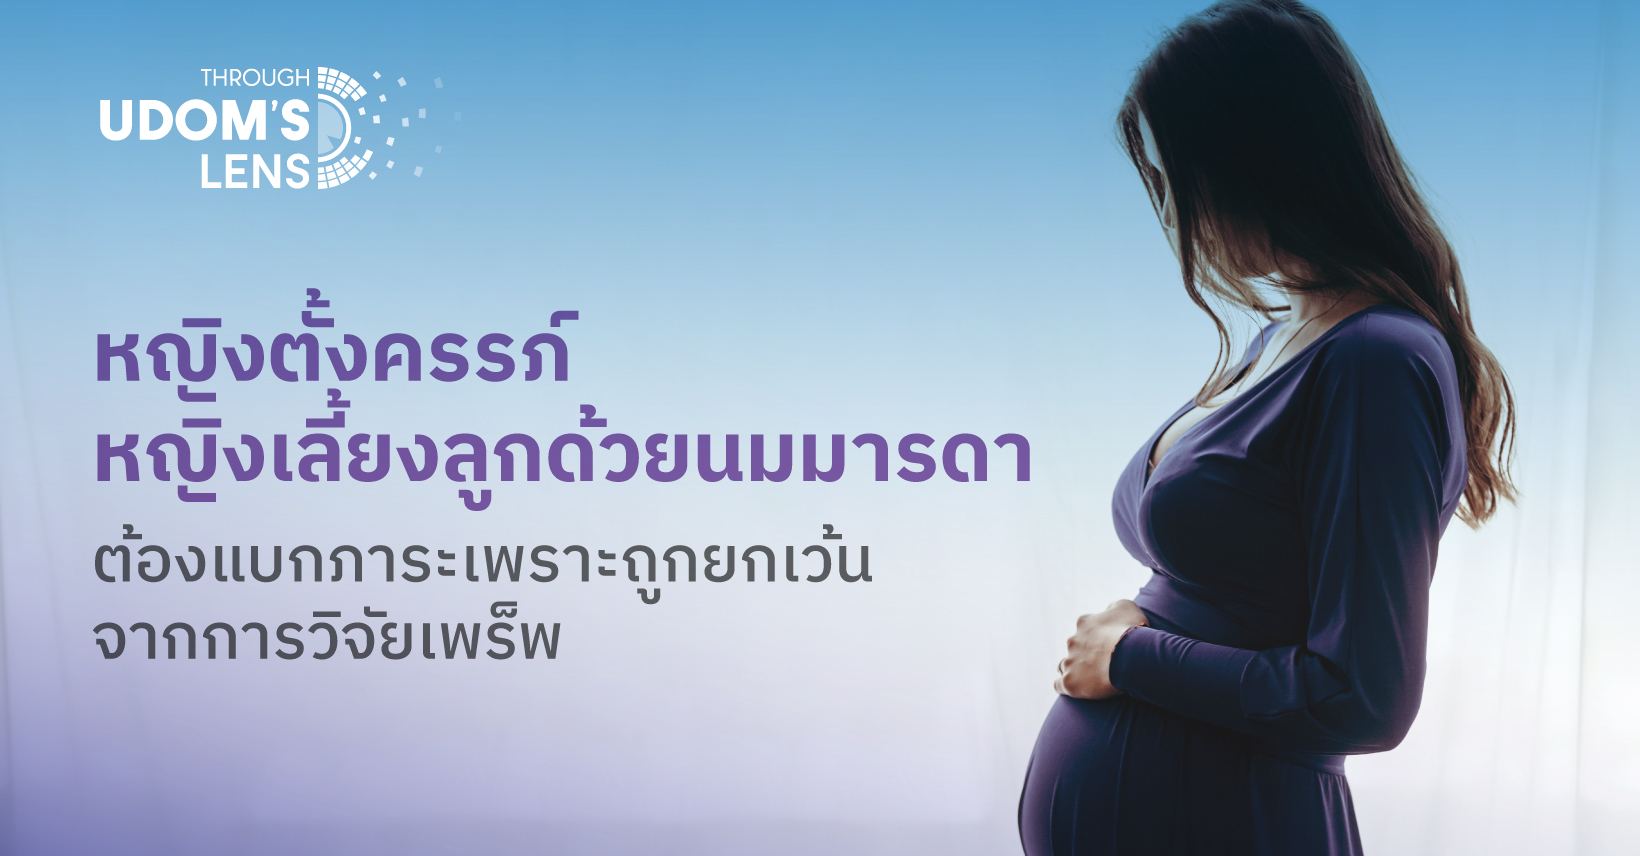 หญิงตั้งครรภ์ หญิงเลี้ยงลูกด้วยนมมารดา ต้องแบกภาระเพราะถูกยกเว้นจากการวิจัยเพร็พ